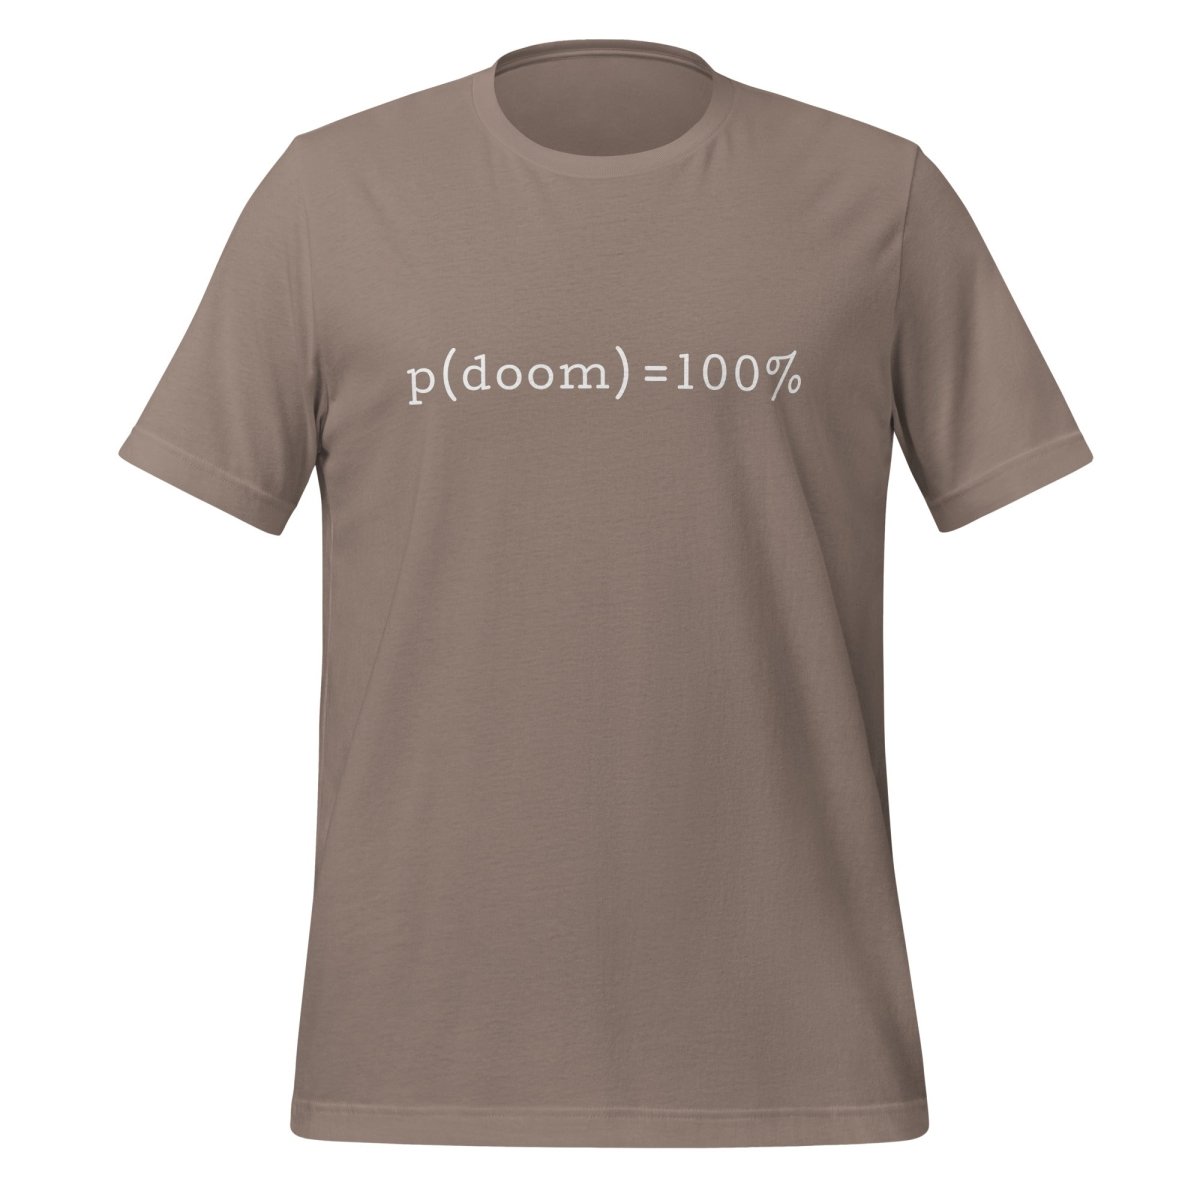 p(doom) = 100% T - Shirt (unisex) - Pebble - AI Store